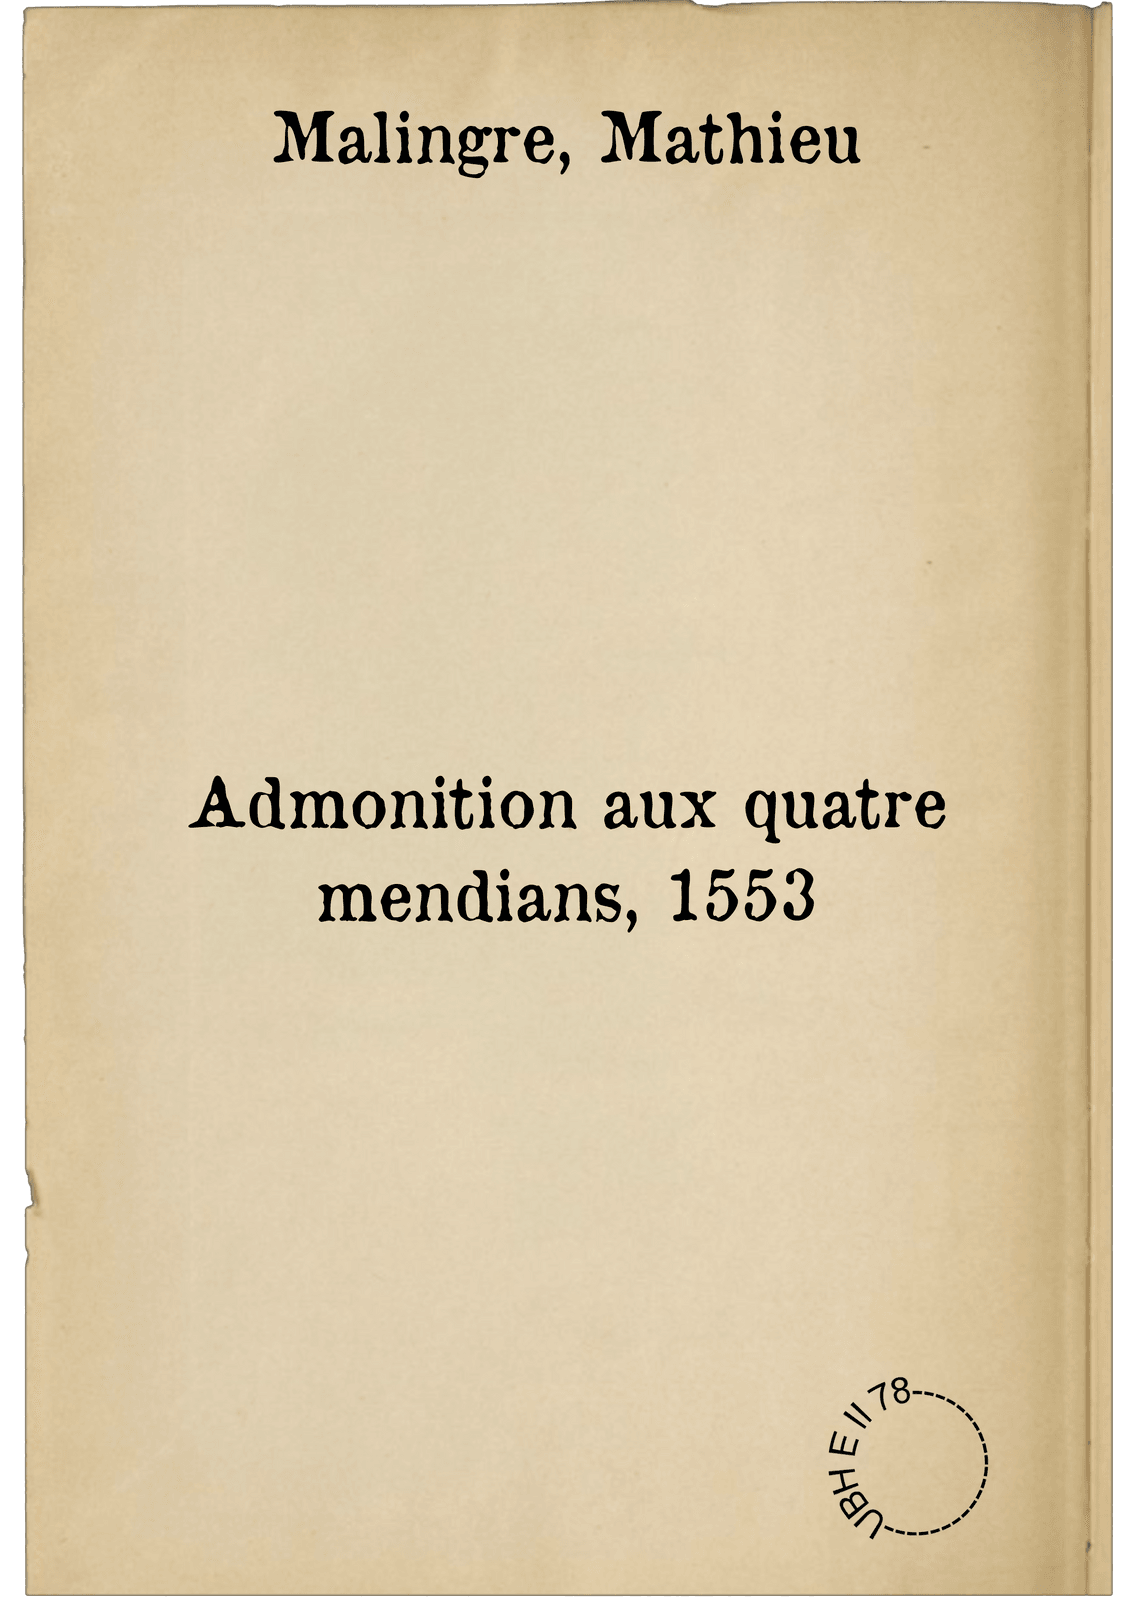 Admonition aux quatre mendians, 1553